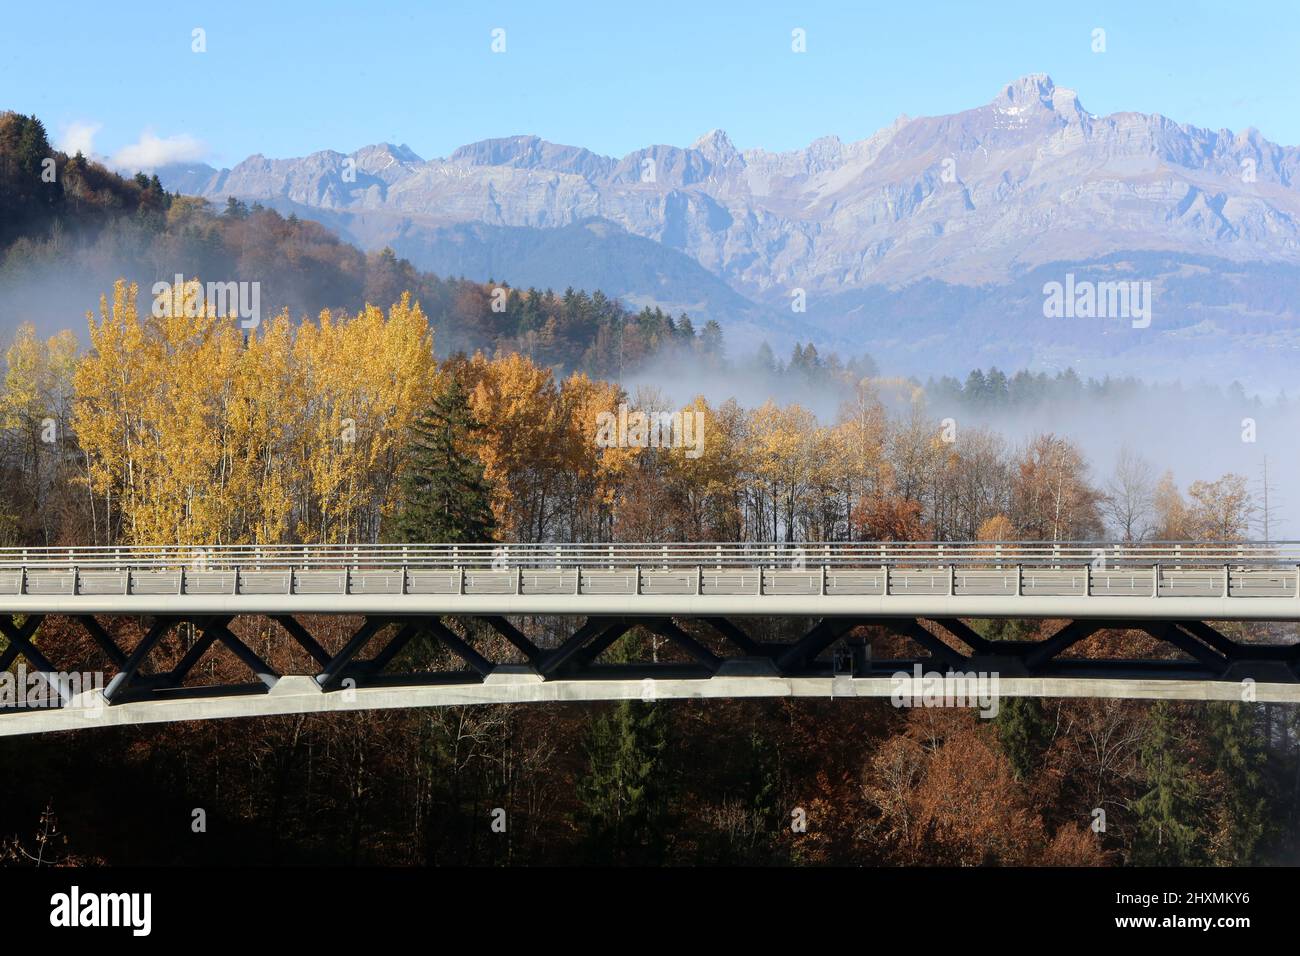 Pont de contournement. Chaine des Arravis. Haute-Savoie. Auvergne-Rhône-Alpes. France. Stock Photo